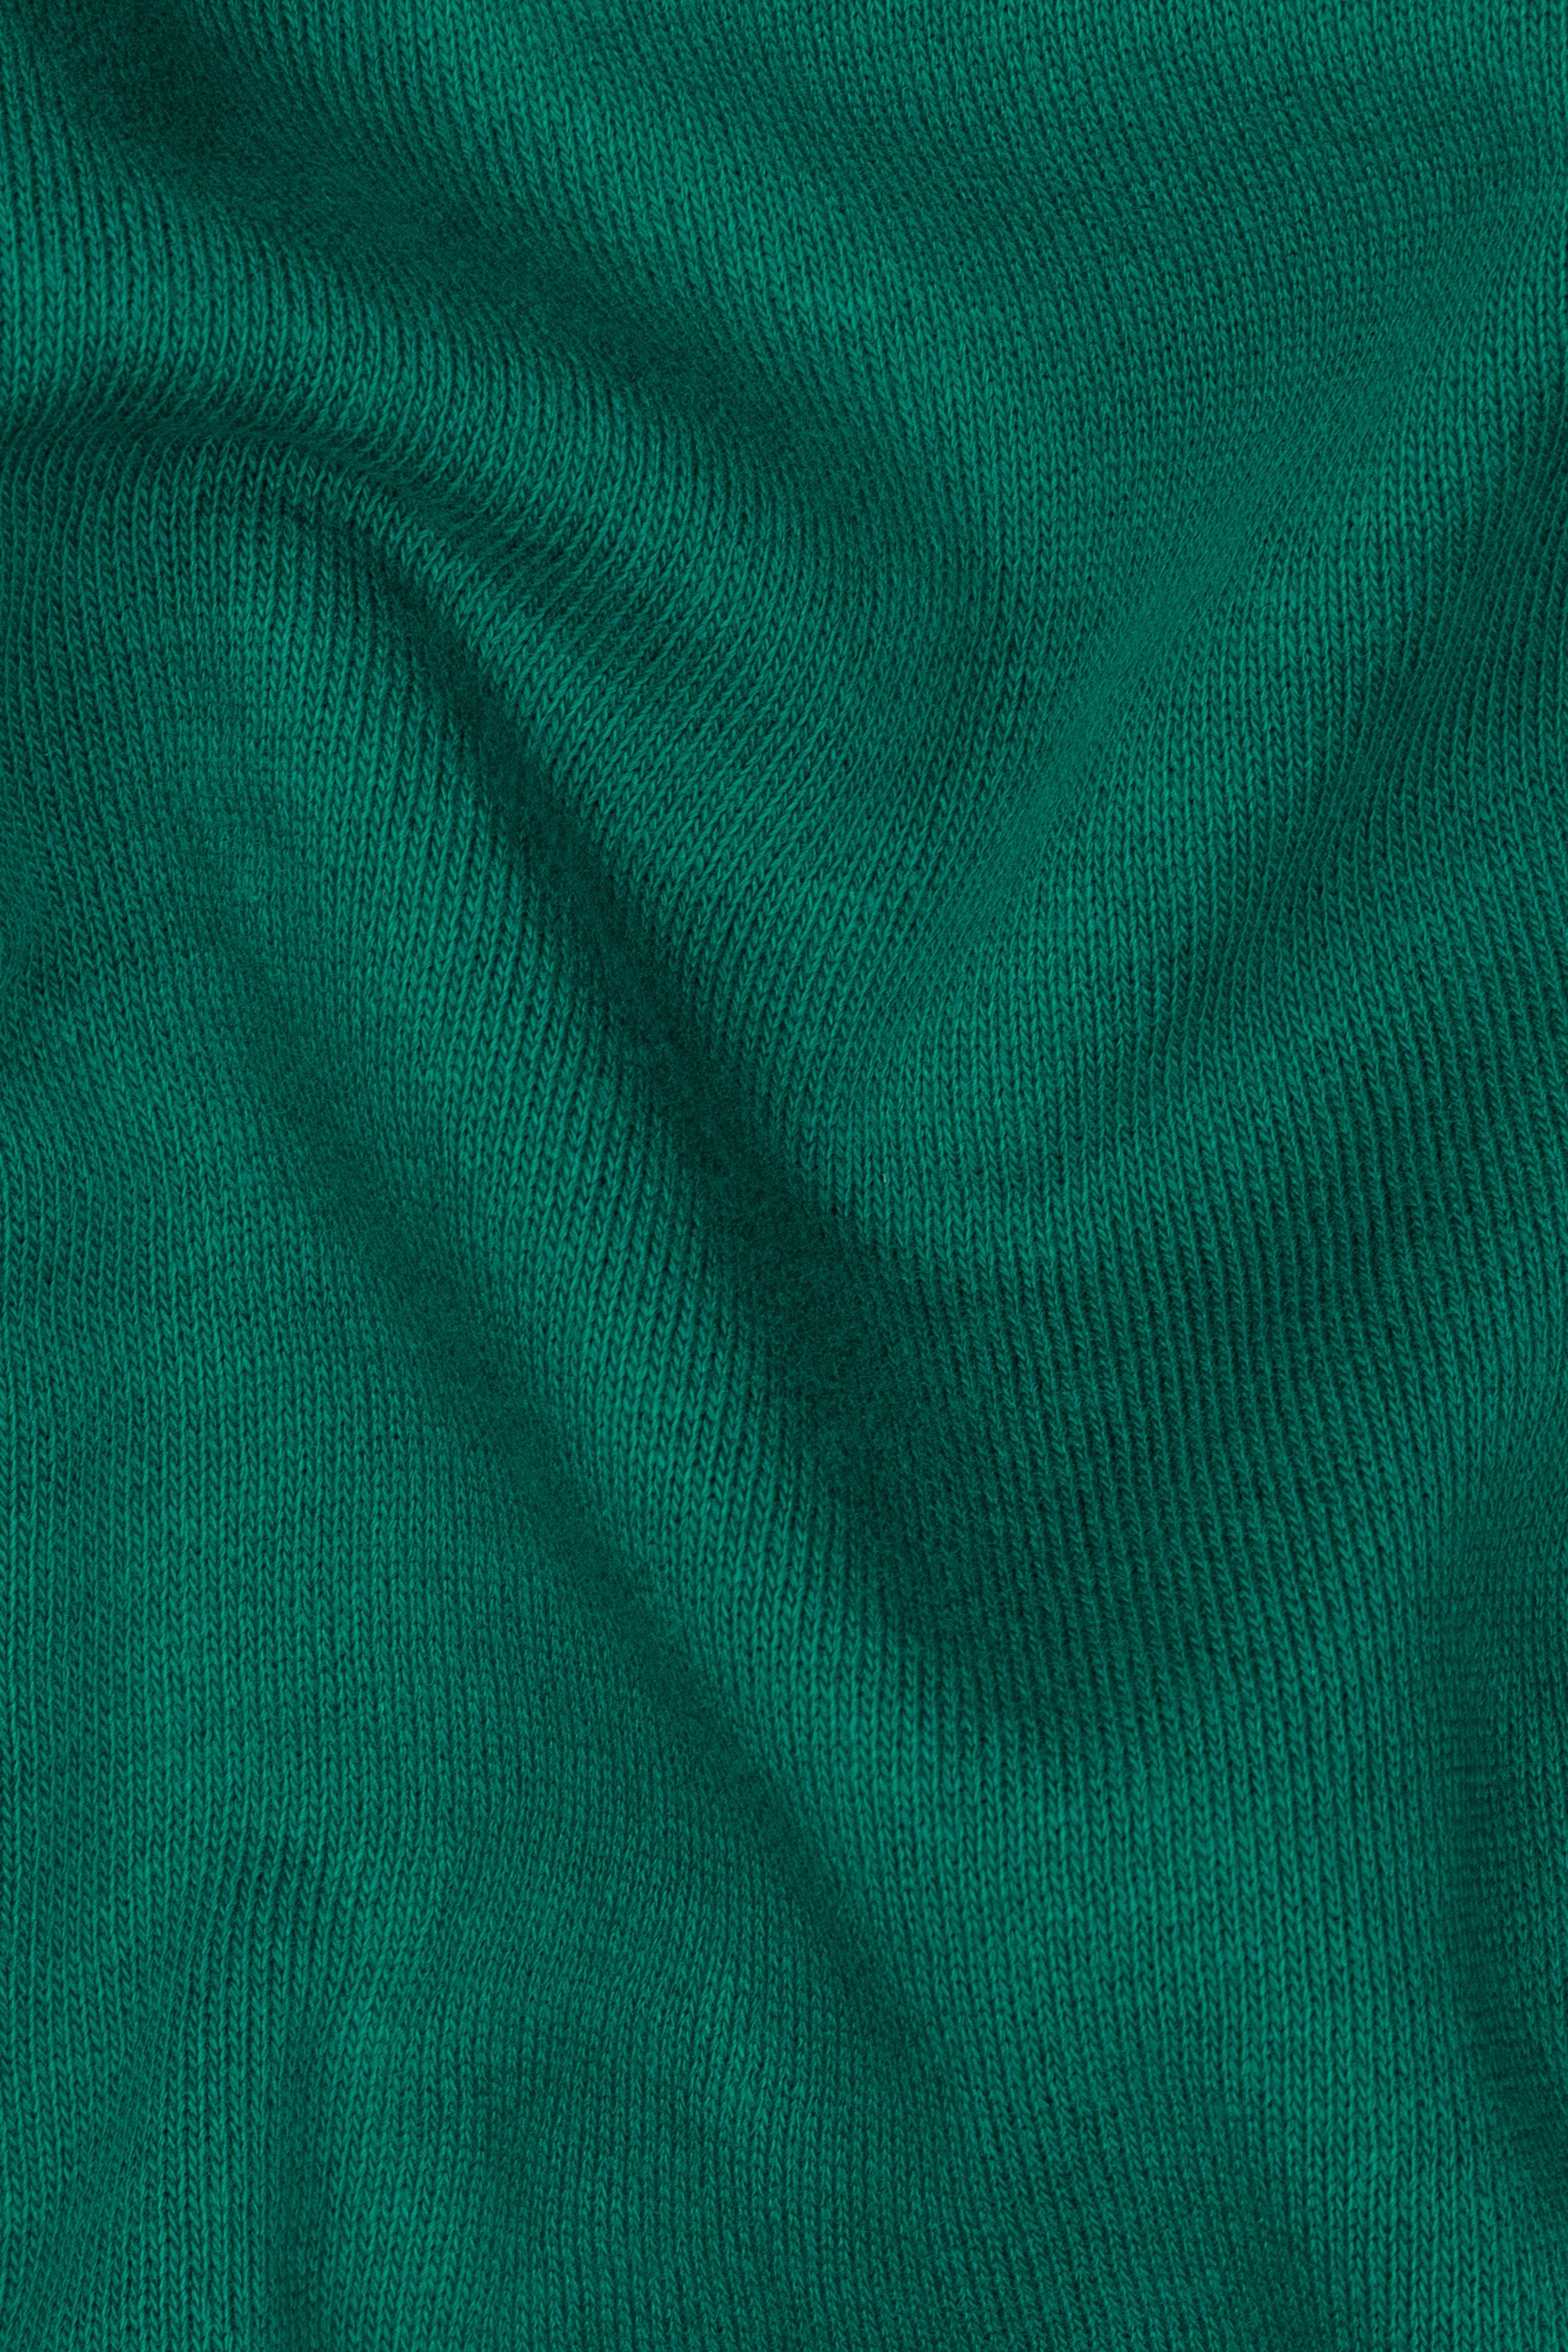 Sherpa Green Premium Cotton Sweatshirt